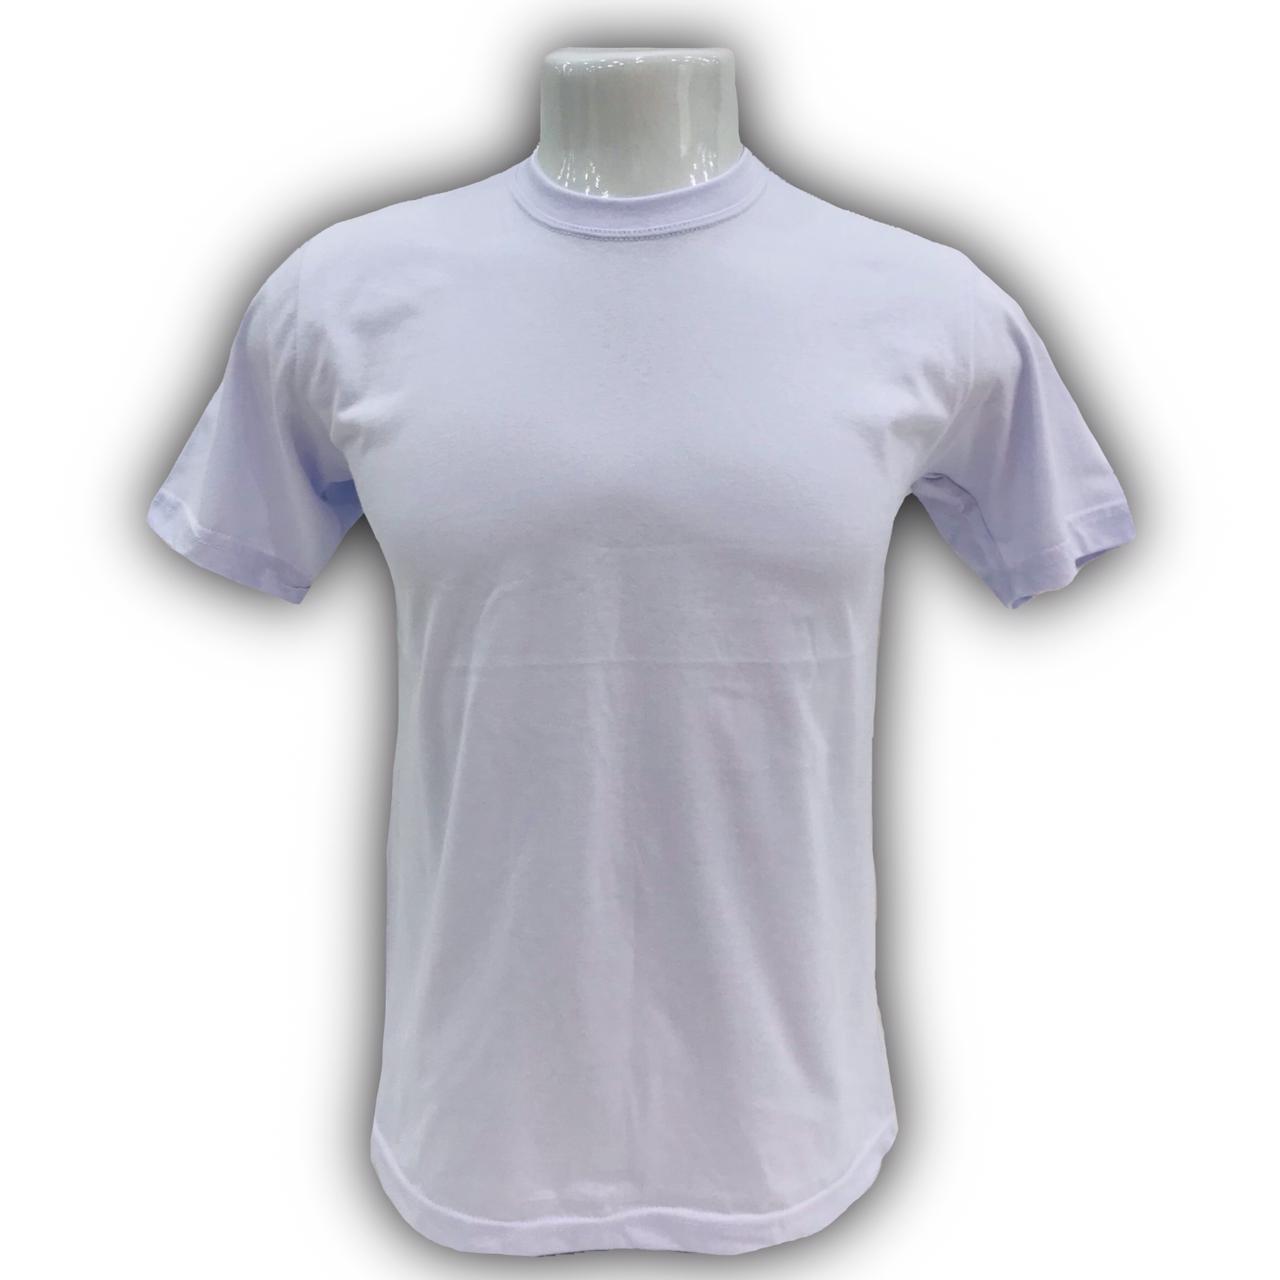 Camiseta Básica Fio 30 P ao GG - Cores: Branca e Preta